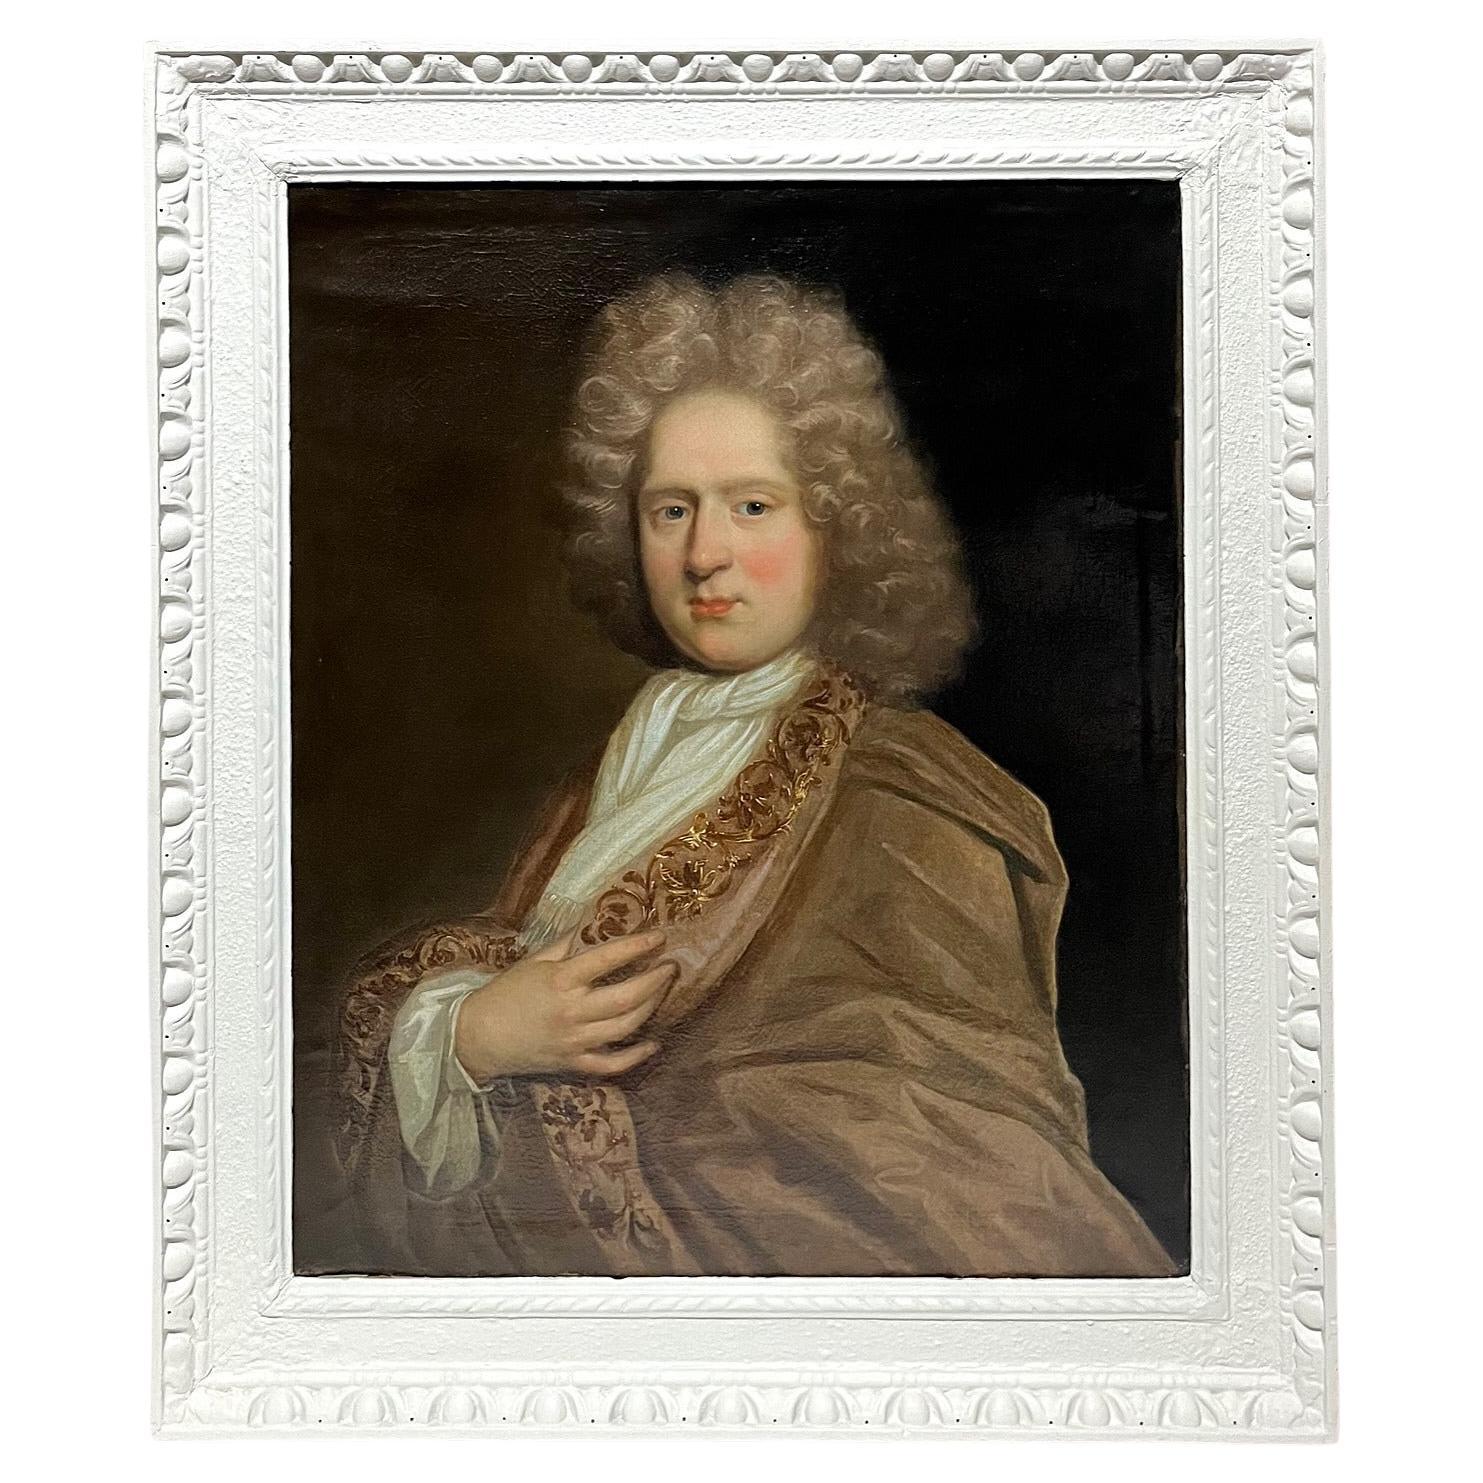 Porträt von "Mr. Bell", Sir Godfrey Kneller zugeschrieben, um 1720